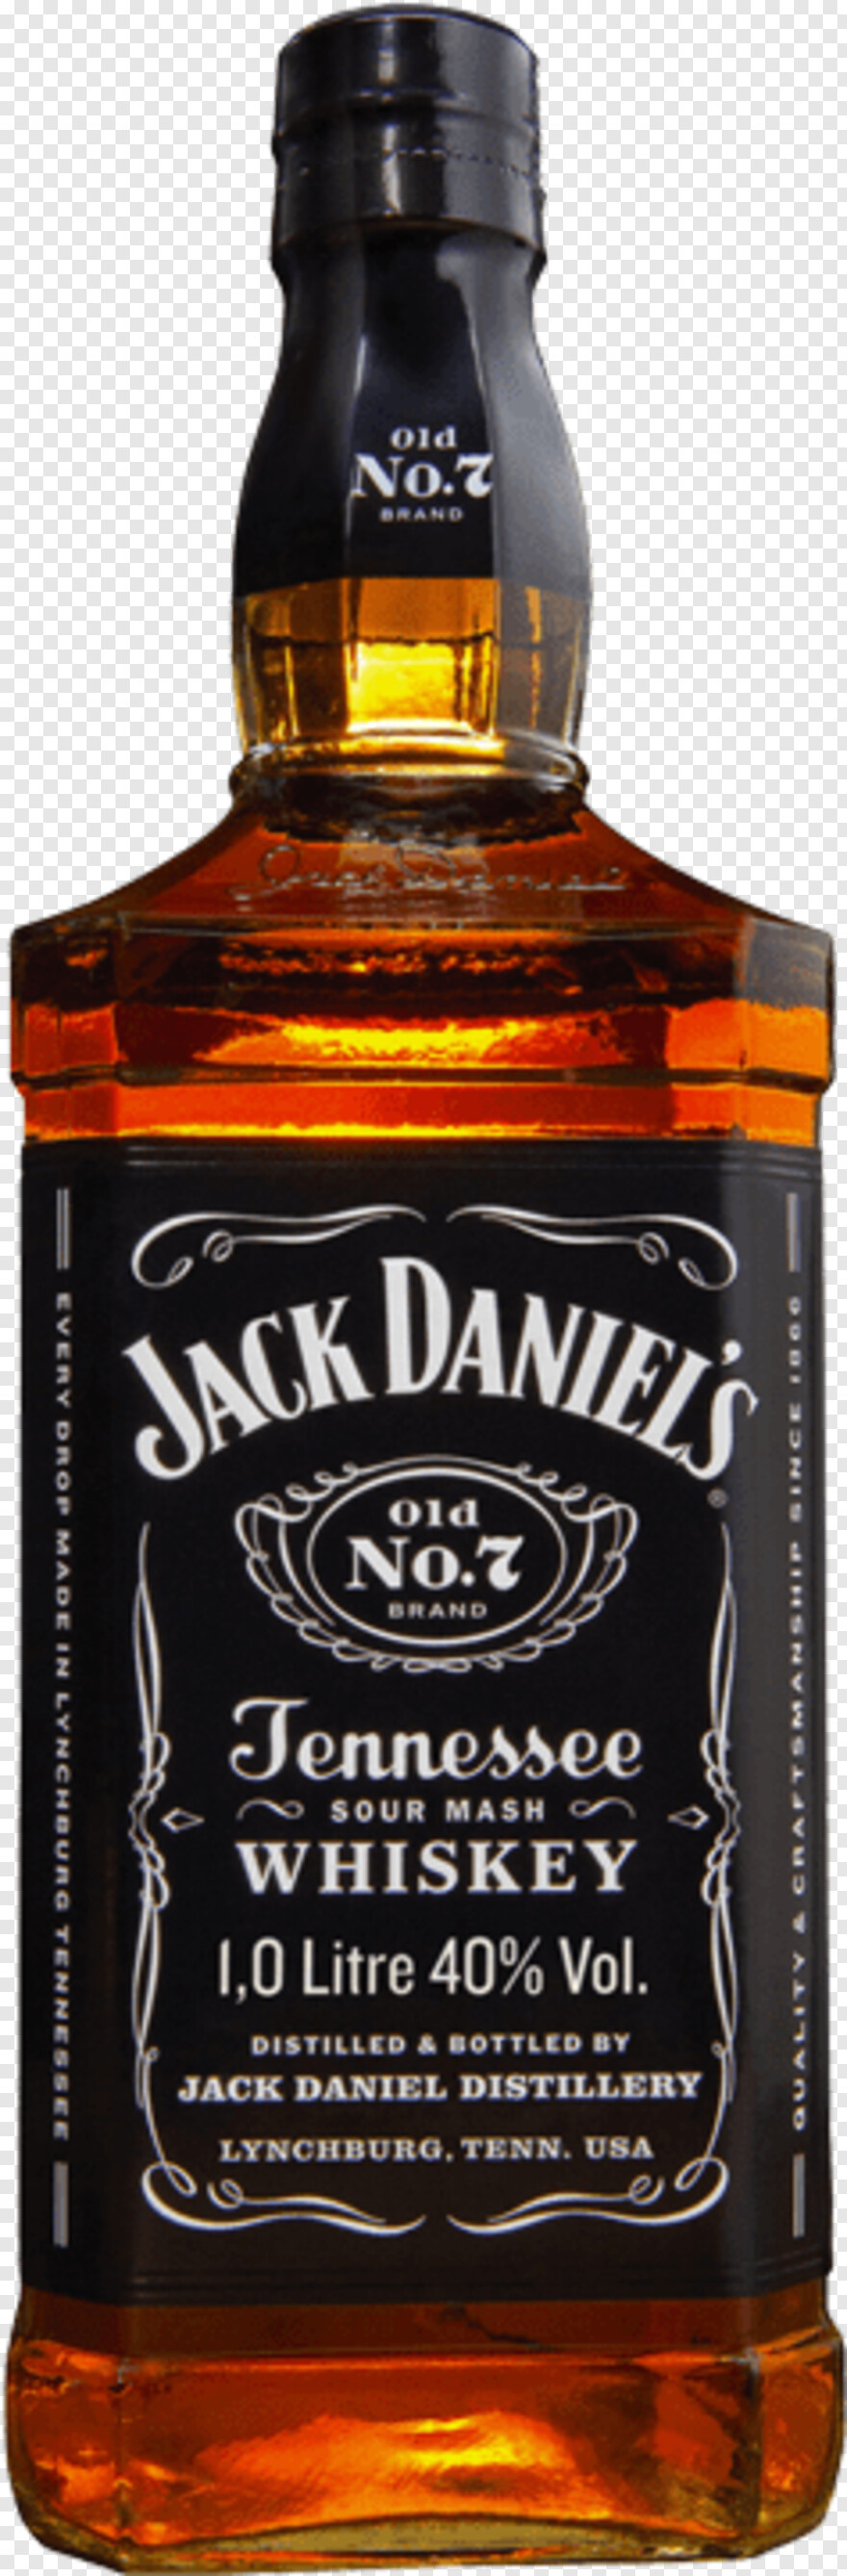 jack-daniels-bottle # 740183